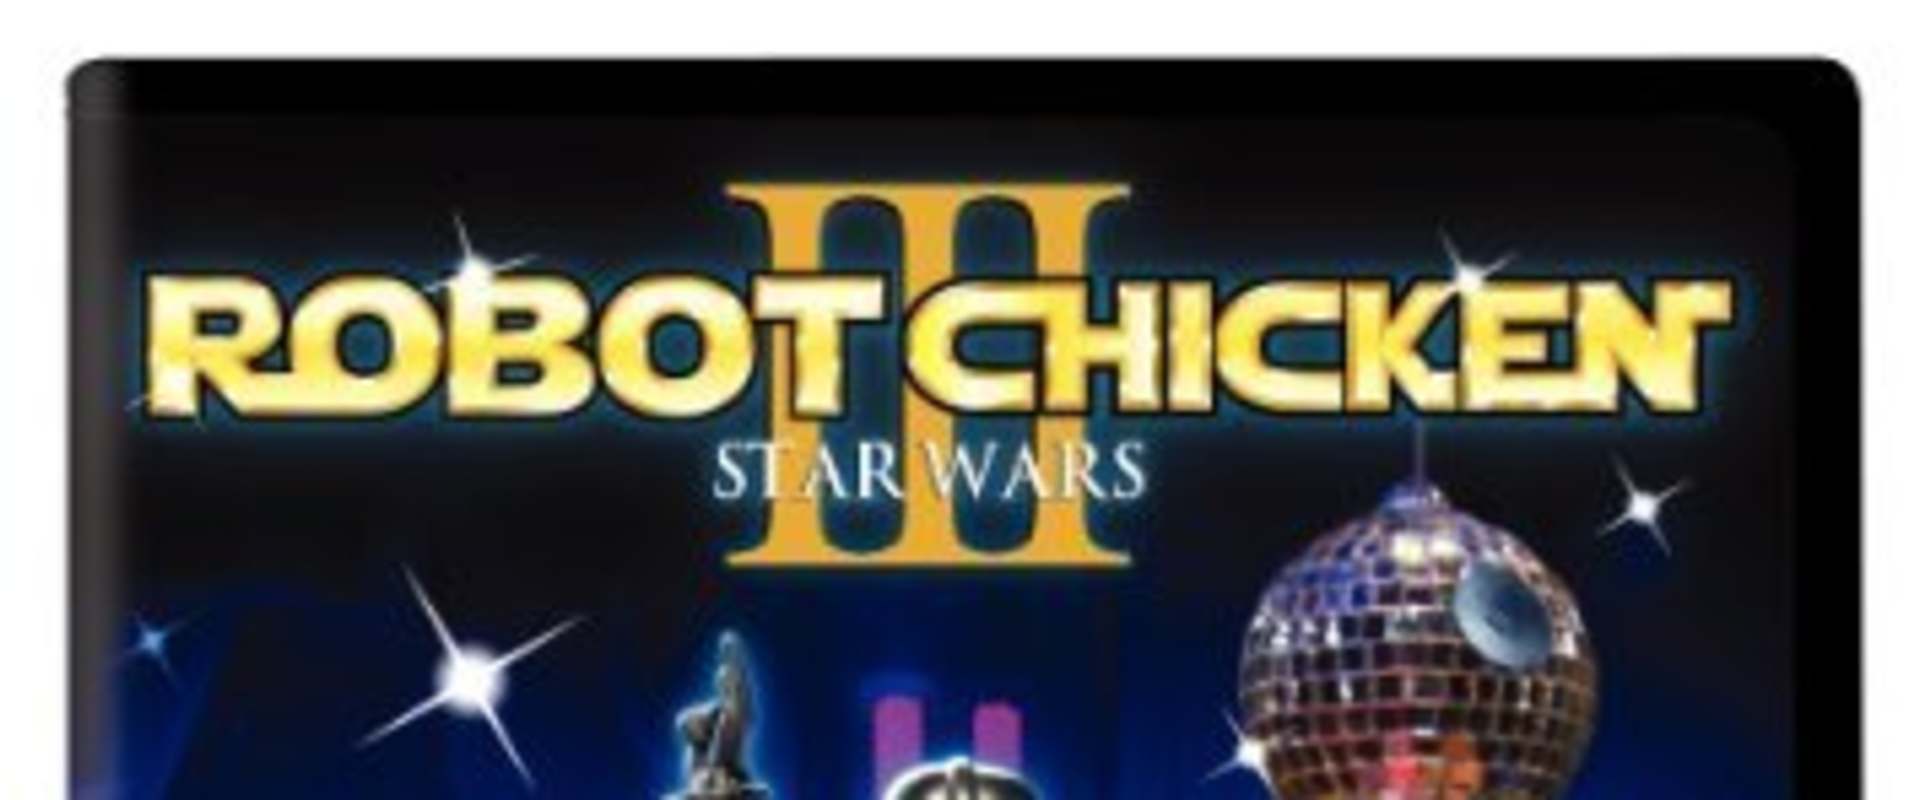 Robot Chicken: Star Wars Episode III background 2